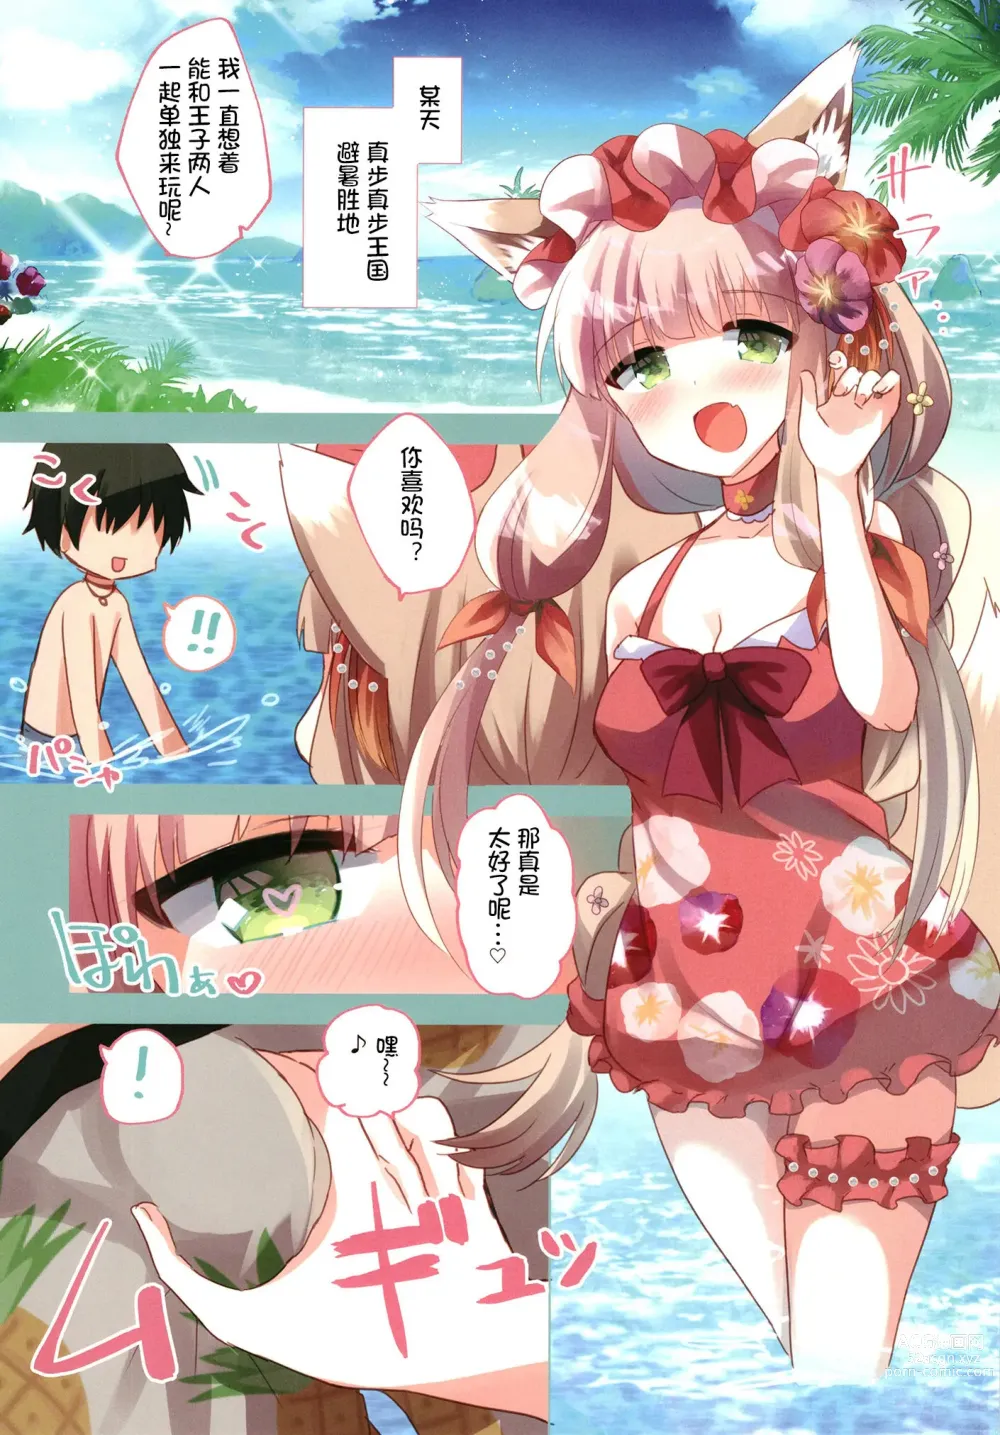 Page 4 of doujinshi PriConne Konekone Re:Dive! Full Colour!